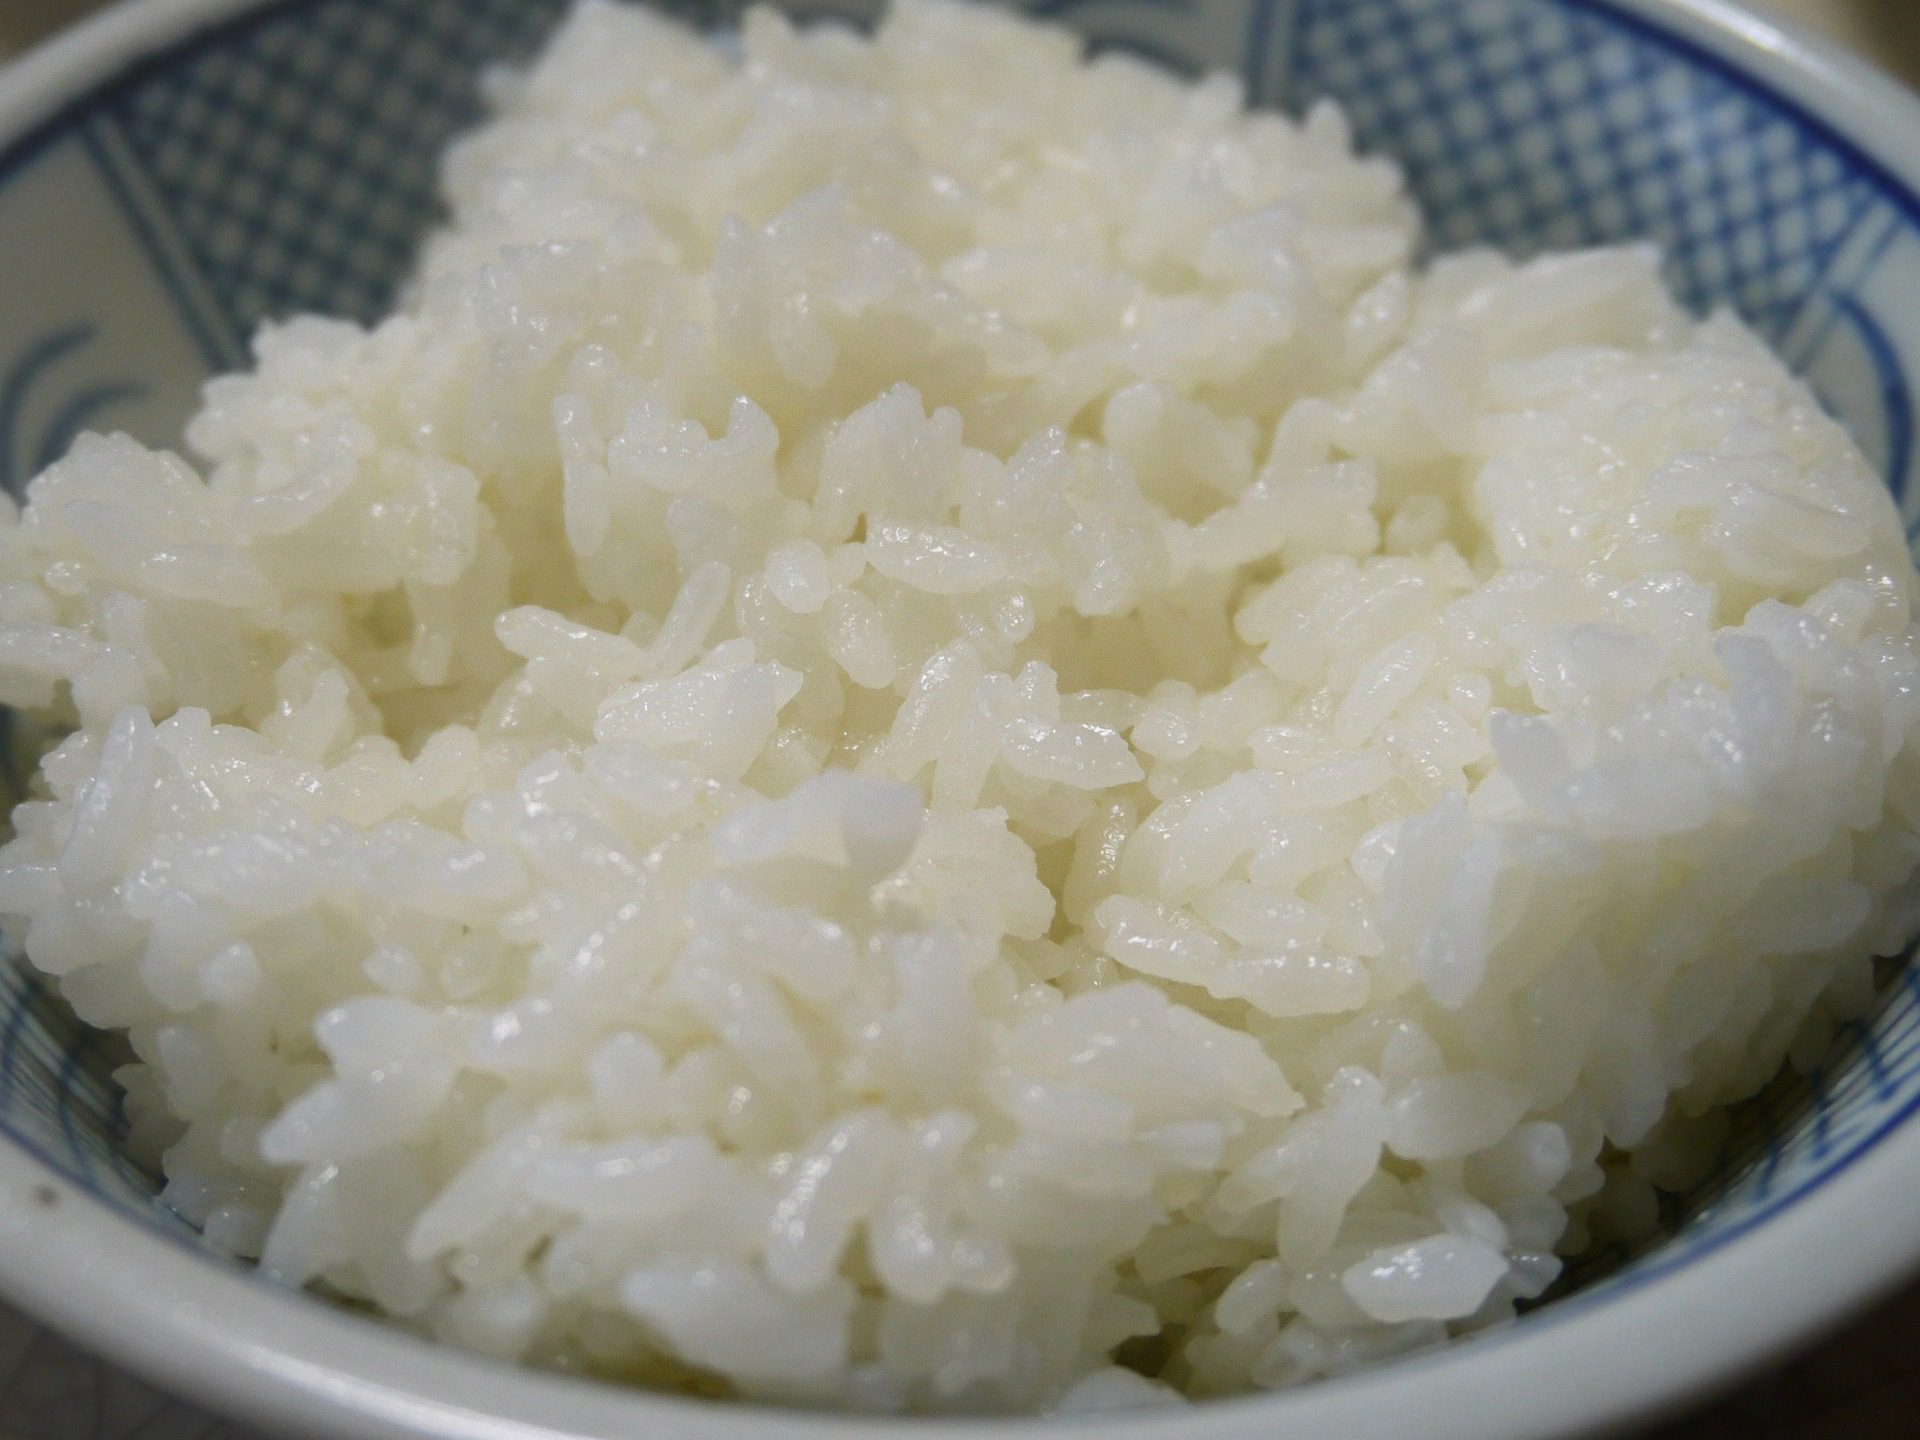 Comment conserver le riz cuit?